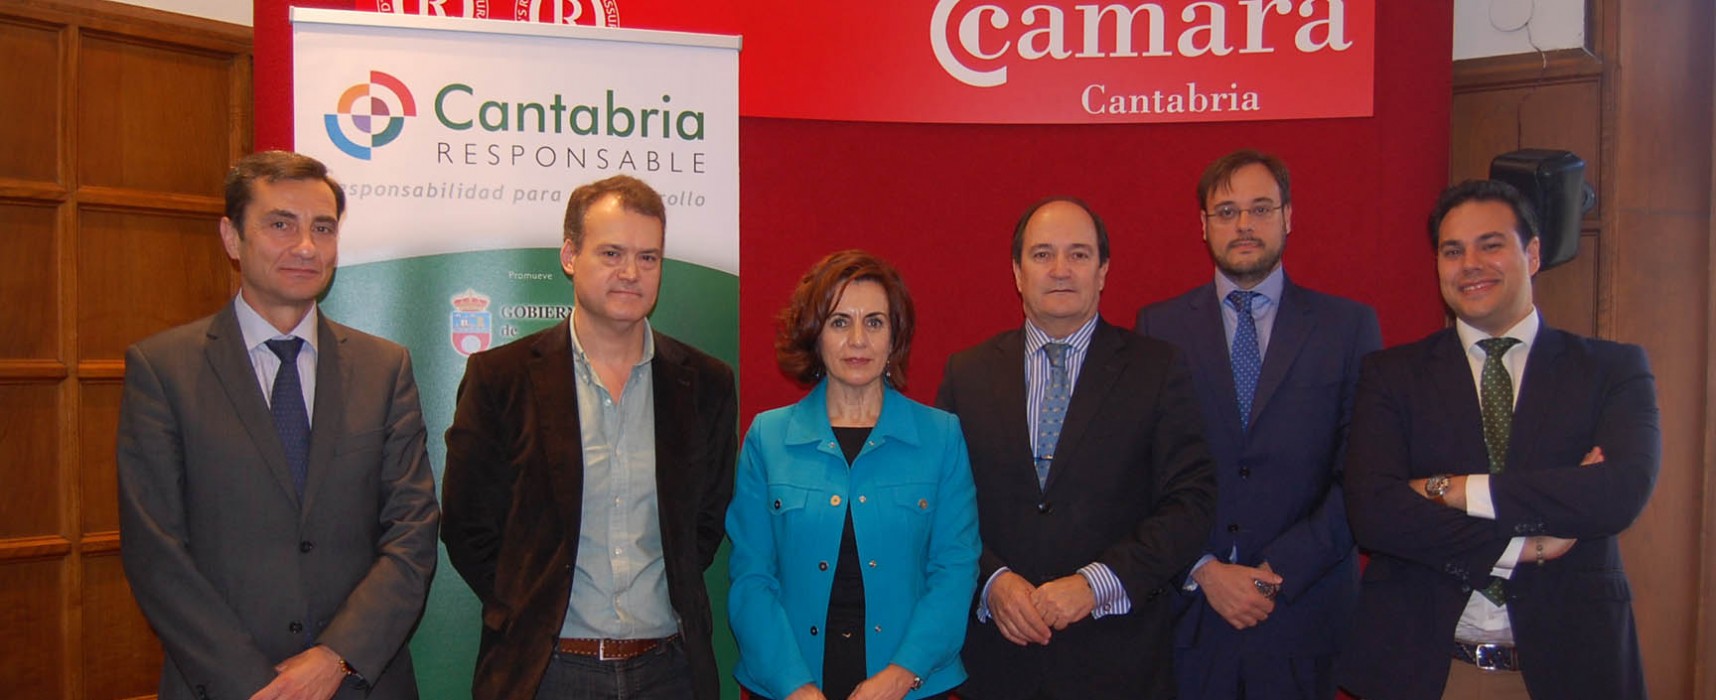 La RSE, un reto para las empresas de Cantabria